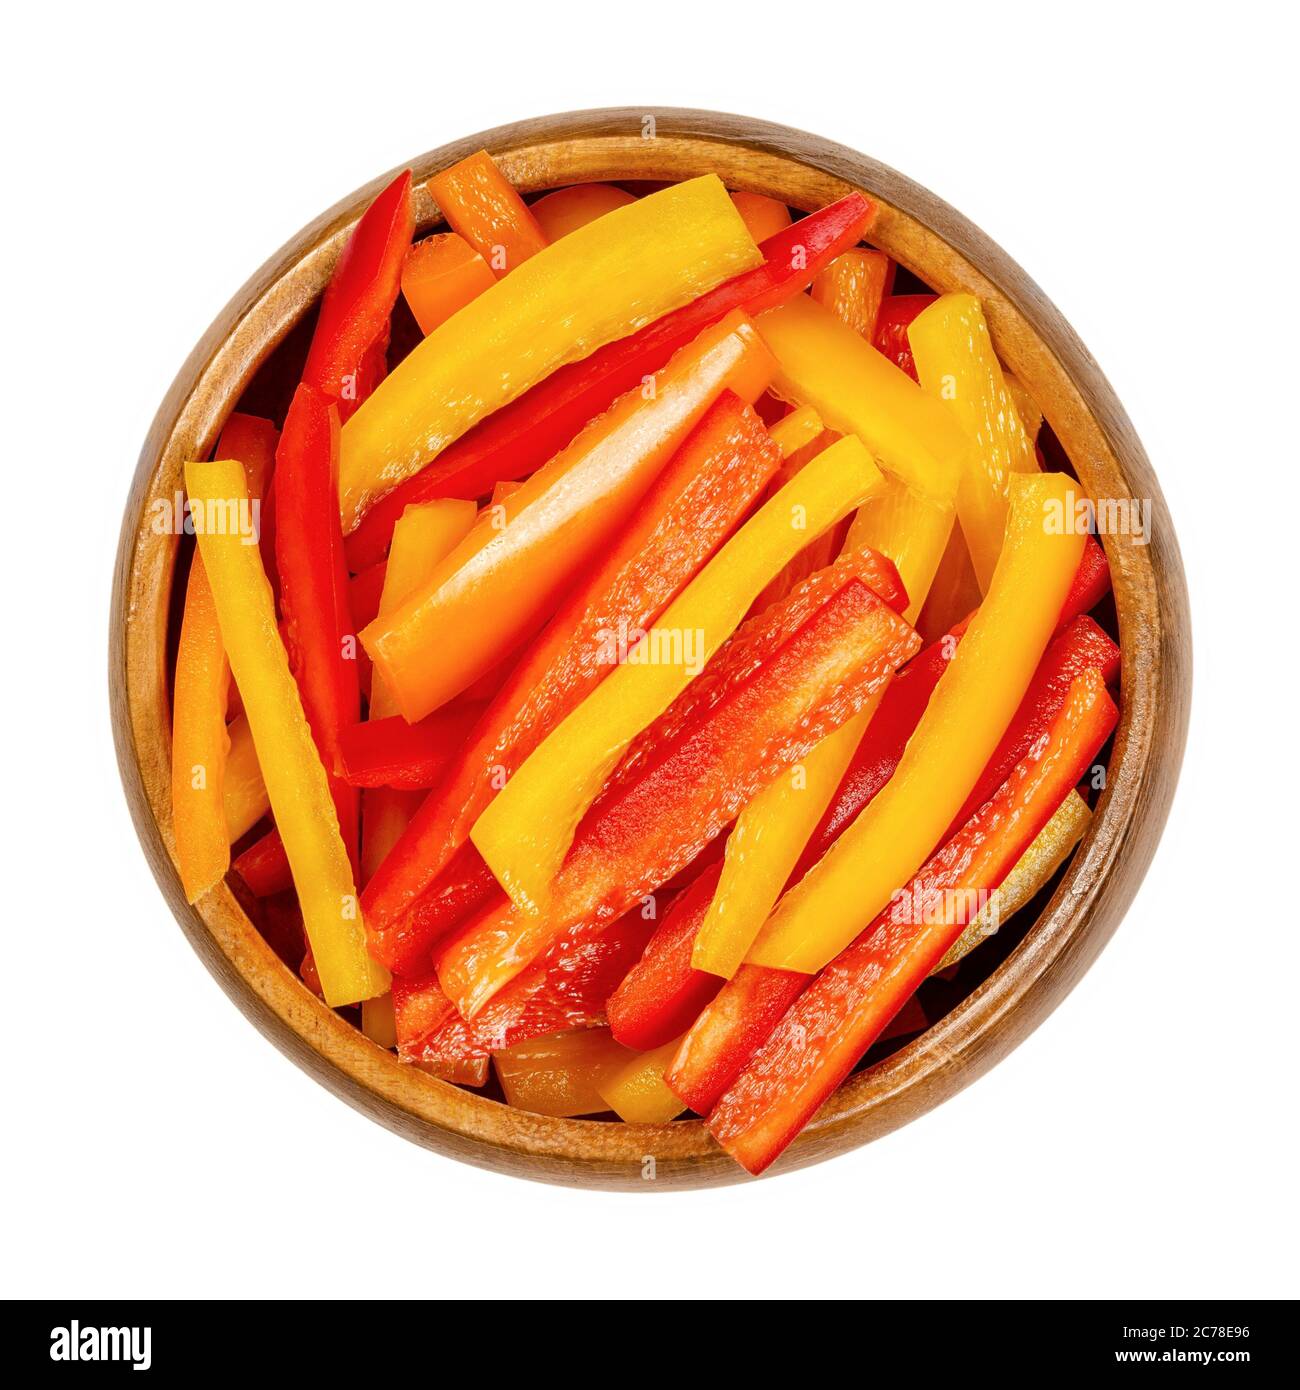 Ein Haufen von Paprika in Scheiben geschnitten in einer Holzschüssel. Paprika oder Paprika in bunten Streifen geschnitten. Frische gelbe, orange und rote Früchte. Stockfoto